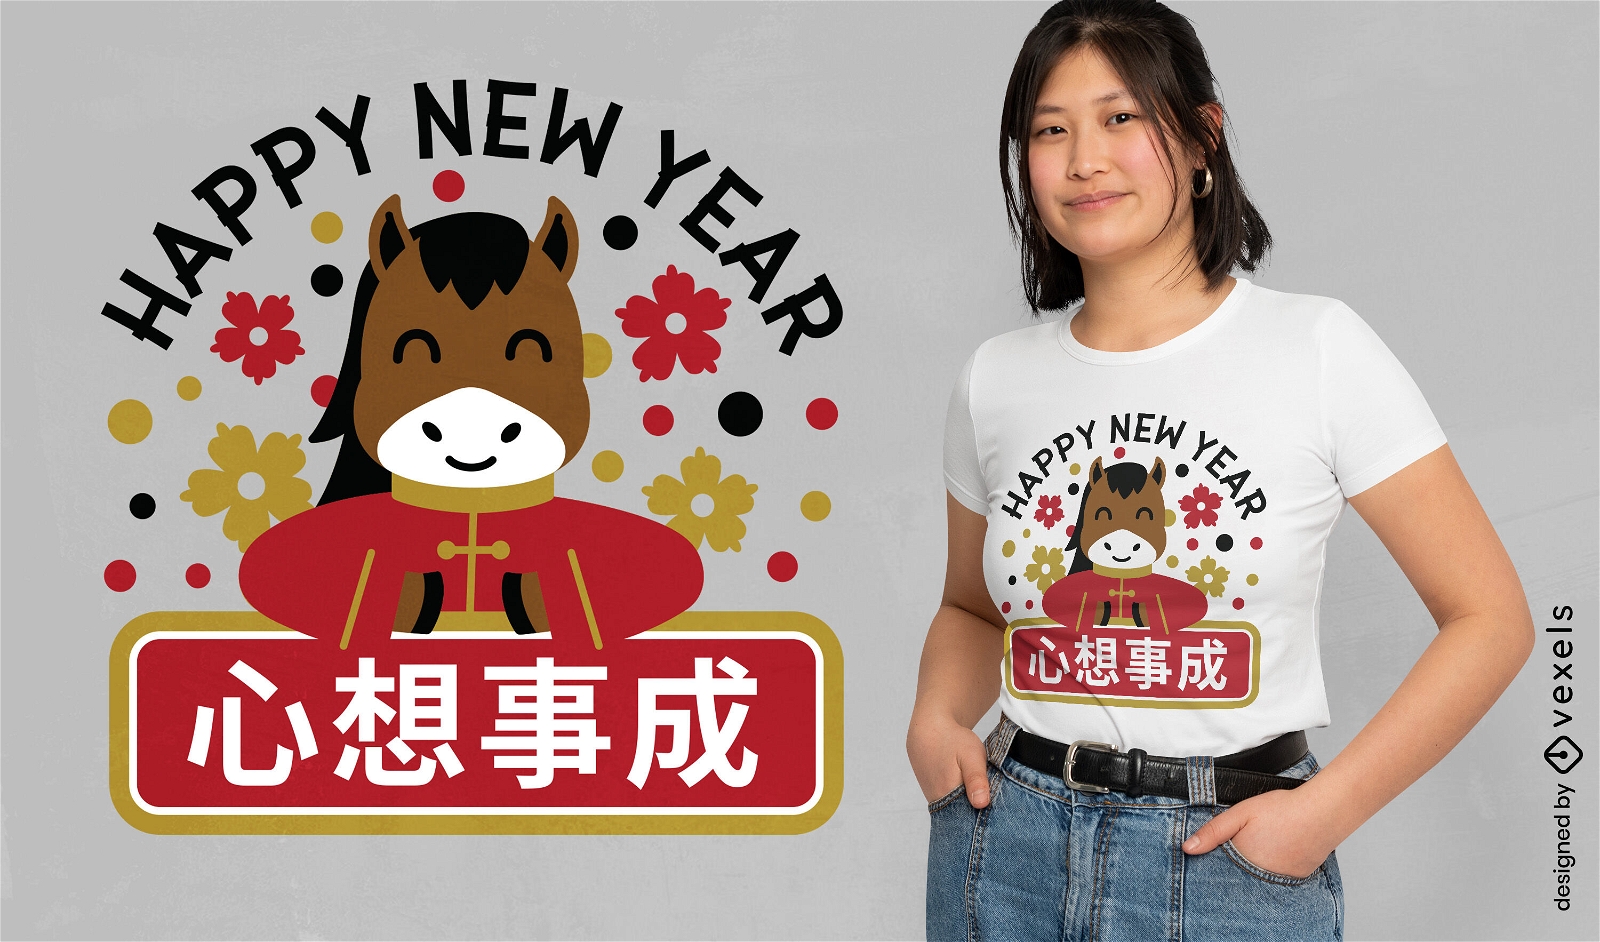 Dise?o de camiseta de caballo de a?o nuevo chino.